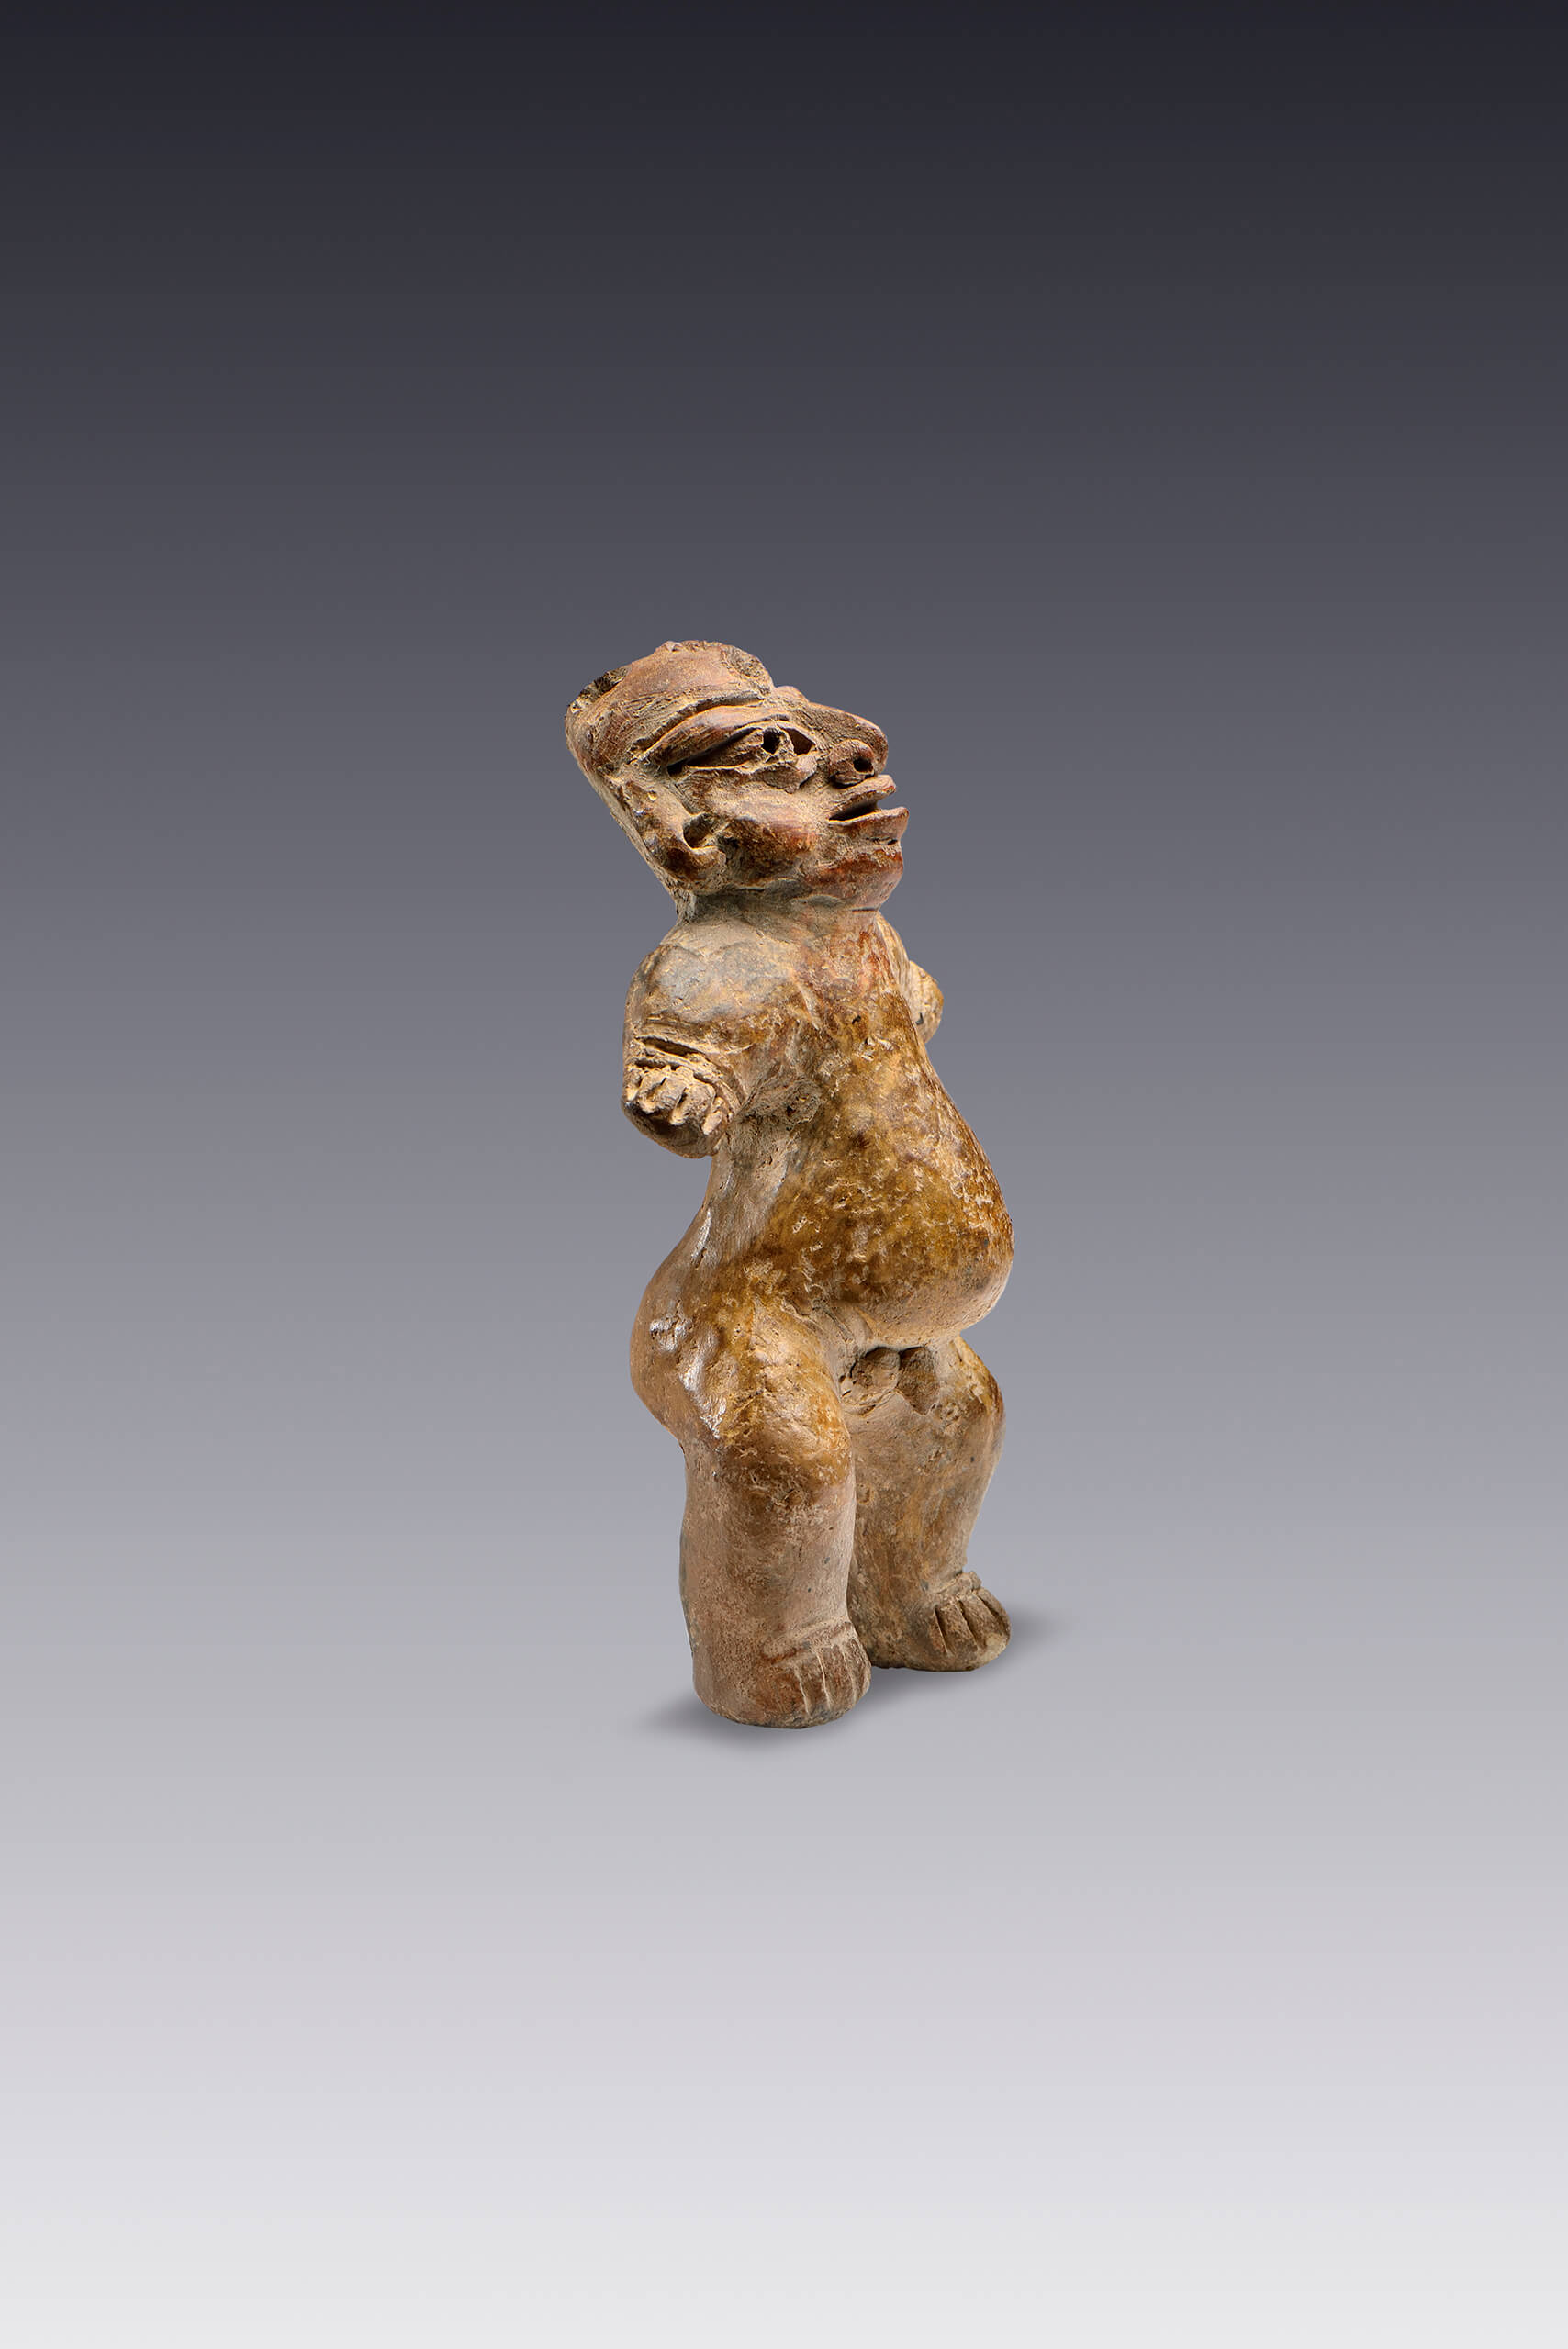 Hombre gordo | El México antiguo. Salas de Arte Prehispánico | Museo Amparo, Puebla